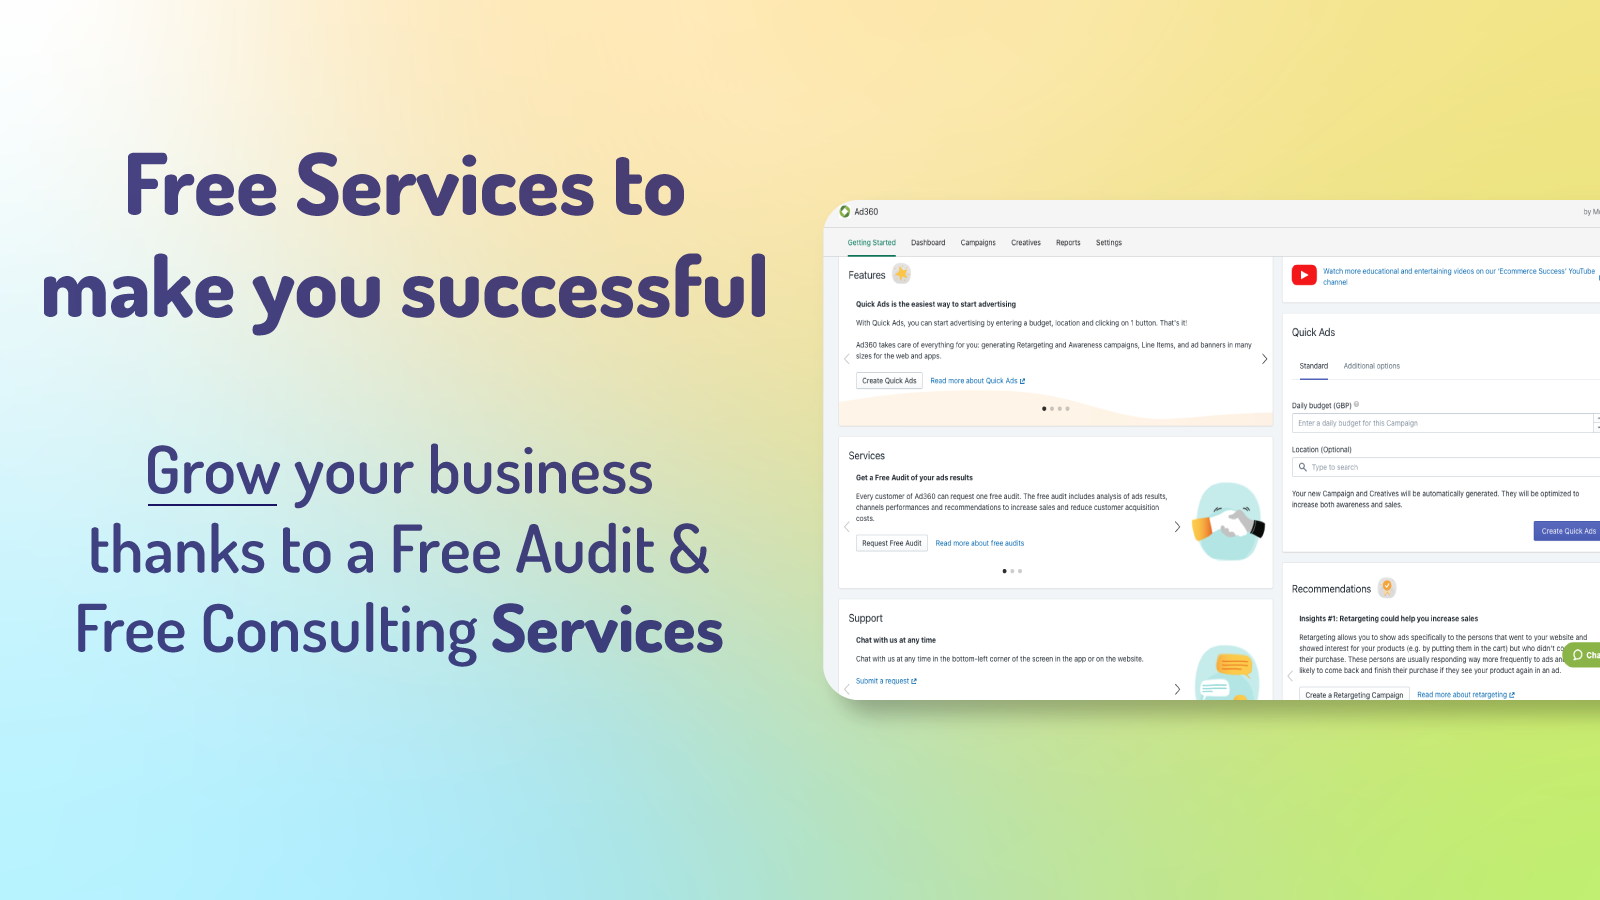 Services gratuits pour vous rendre réussi : Audit gratuit et conseil